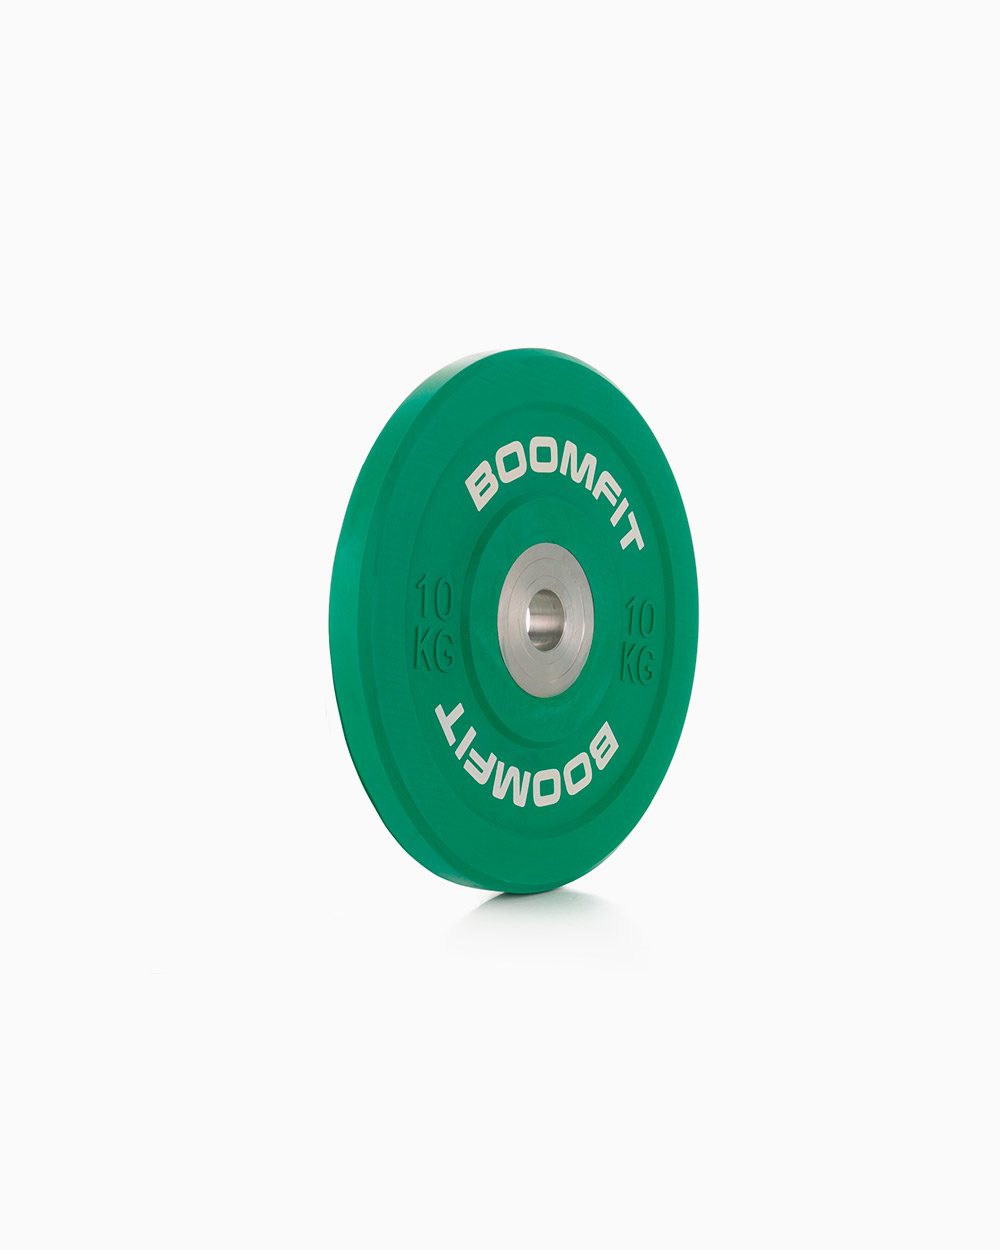 Disco De Competición Boomfit 10kg - verde - 